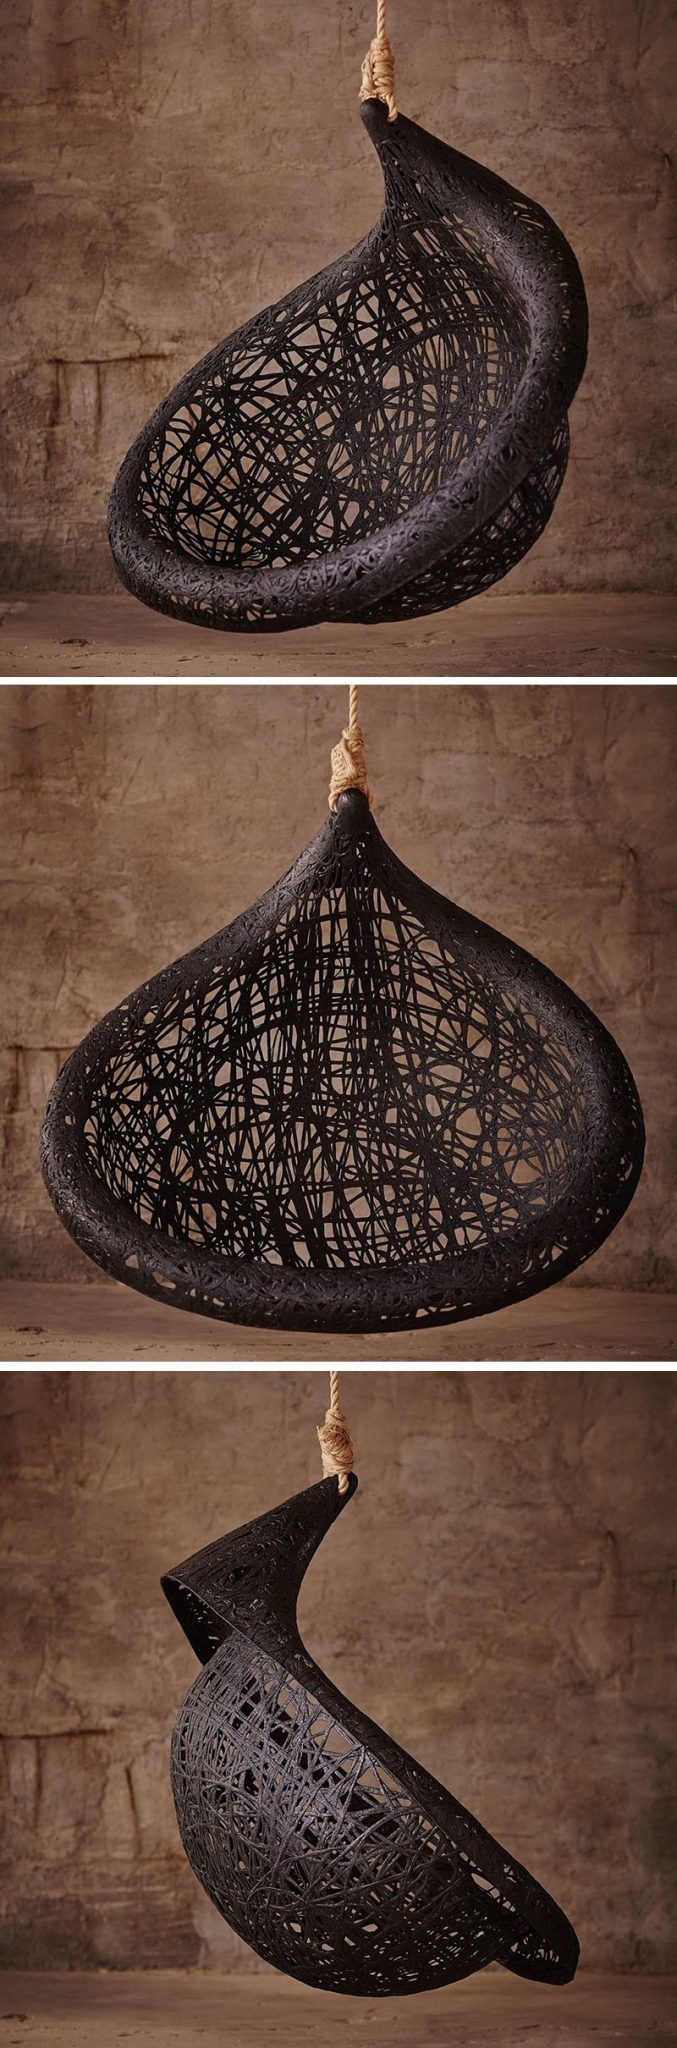 MAFFAM MANU Nest Hanging Chair Design made from Black Volcanic Basalt Fiber